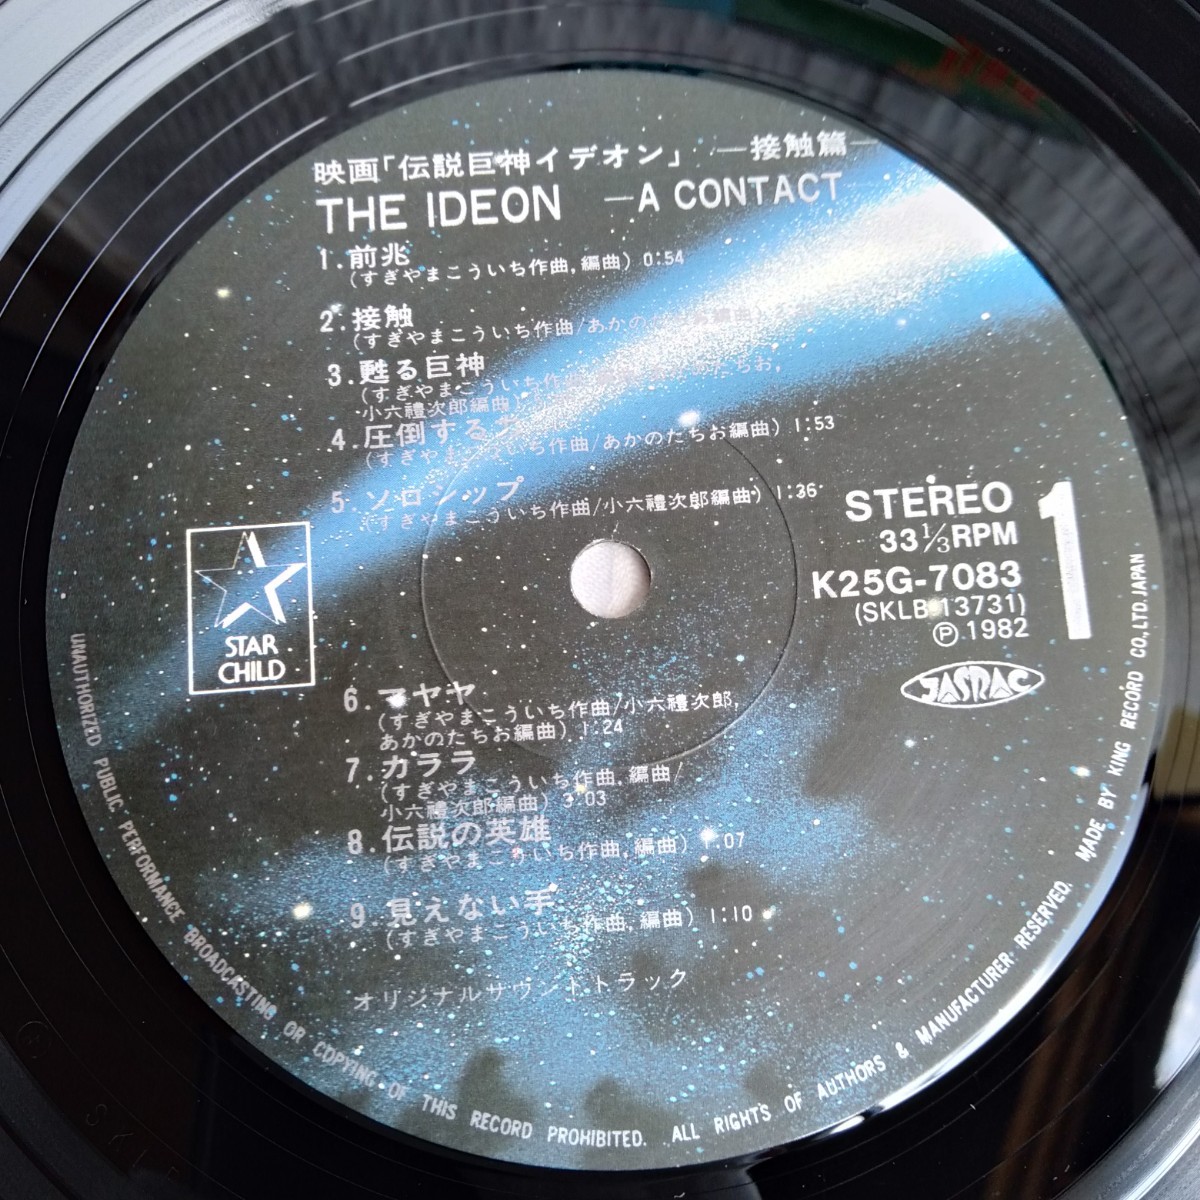 ya292 Junk фильм Space Runaway Ideon контакт . запись LP EP какой листов тоже единая стоимость доставки 1,000 иен воспроизведение не проверка 